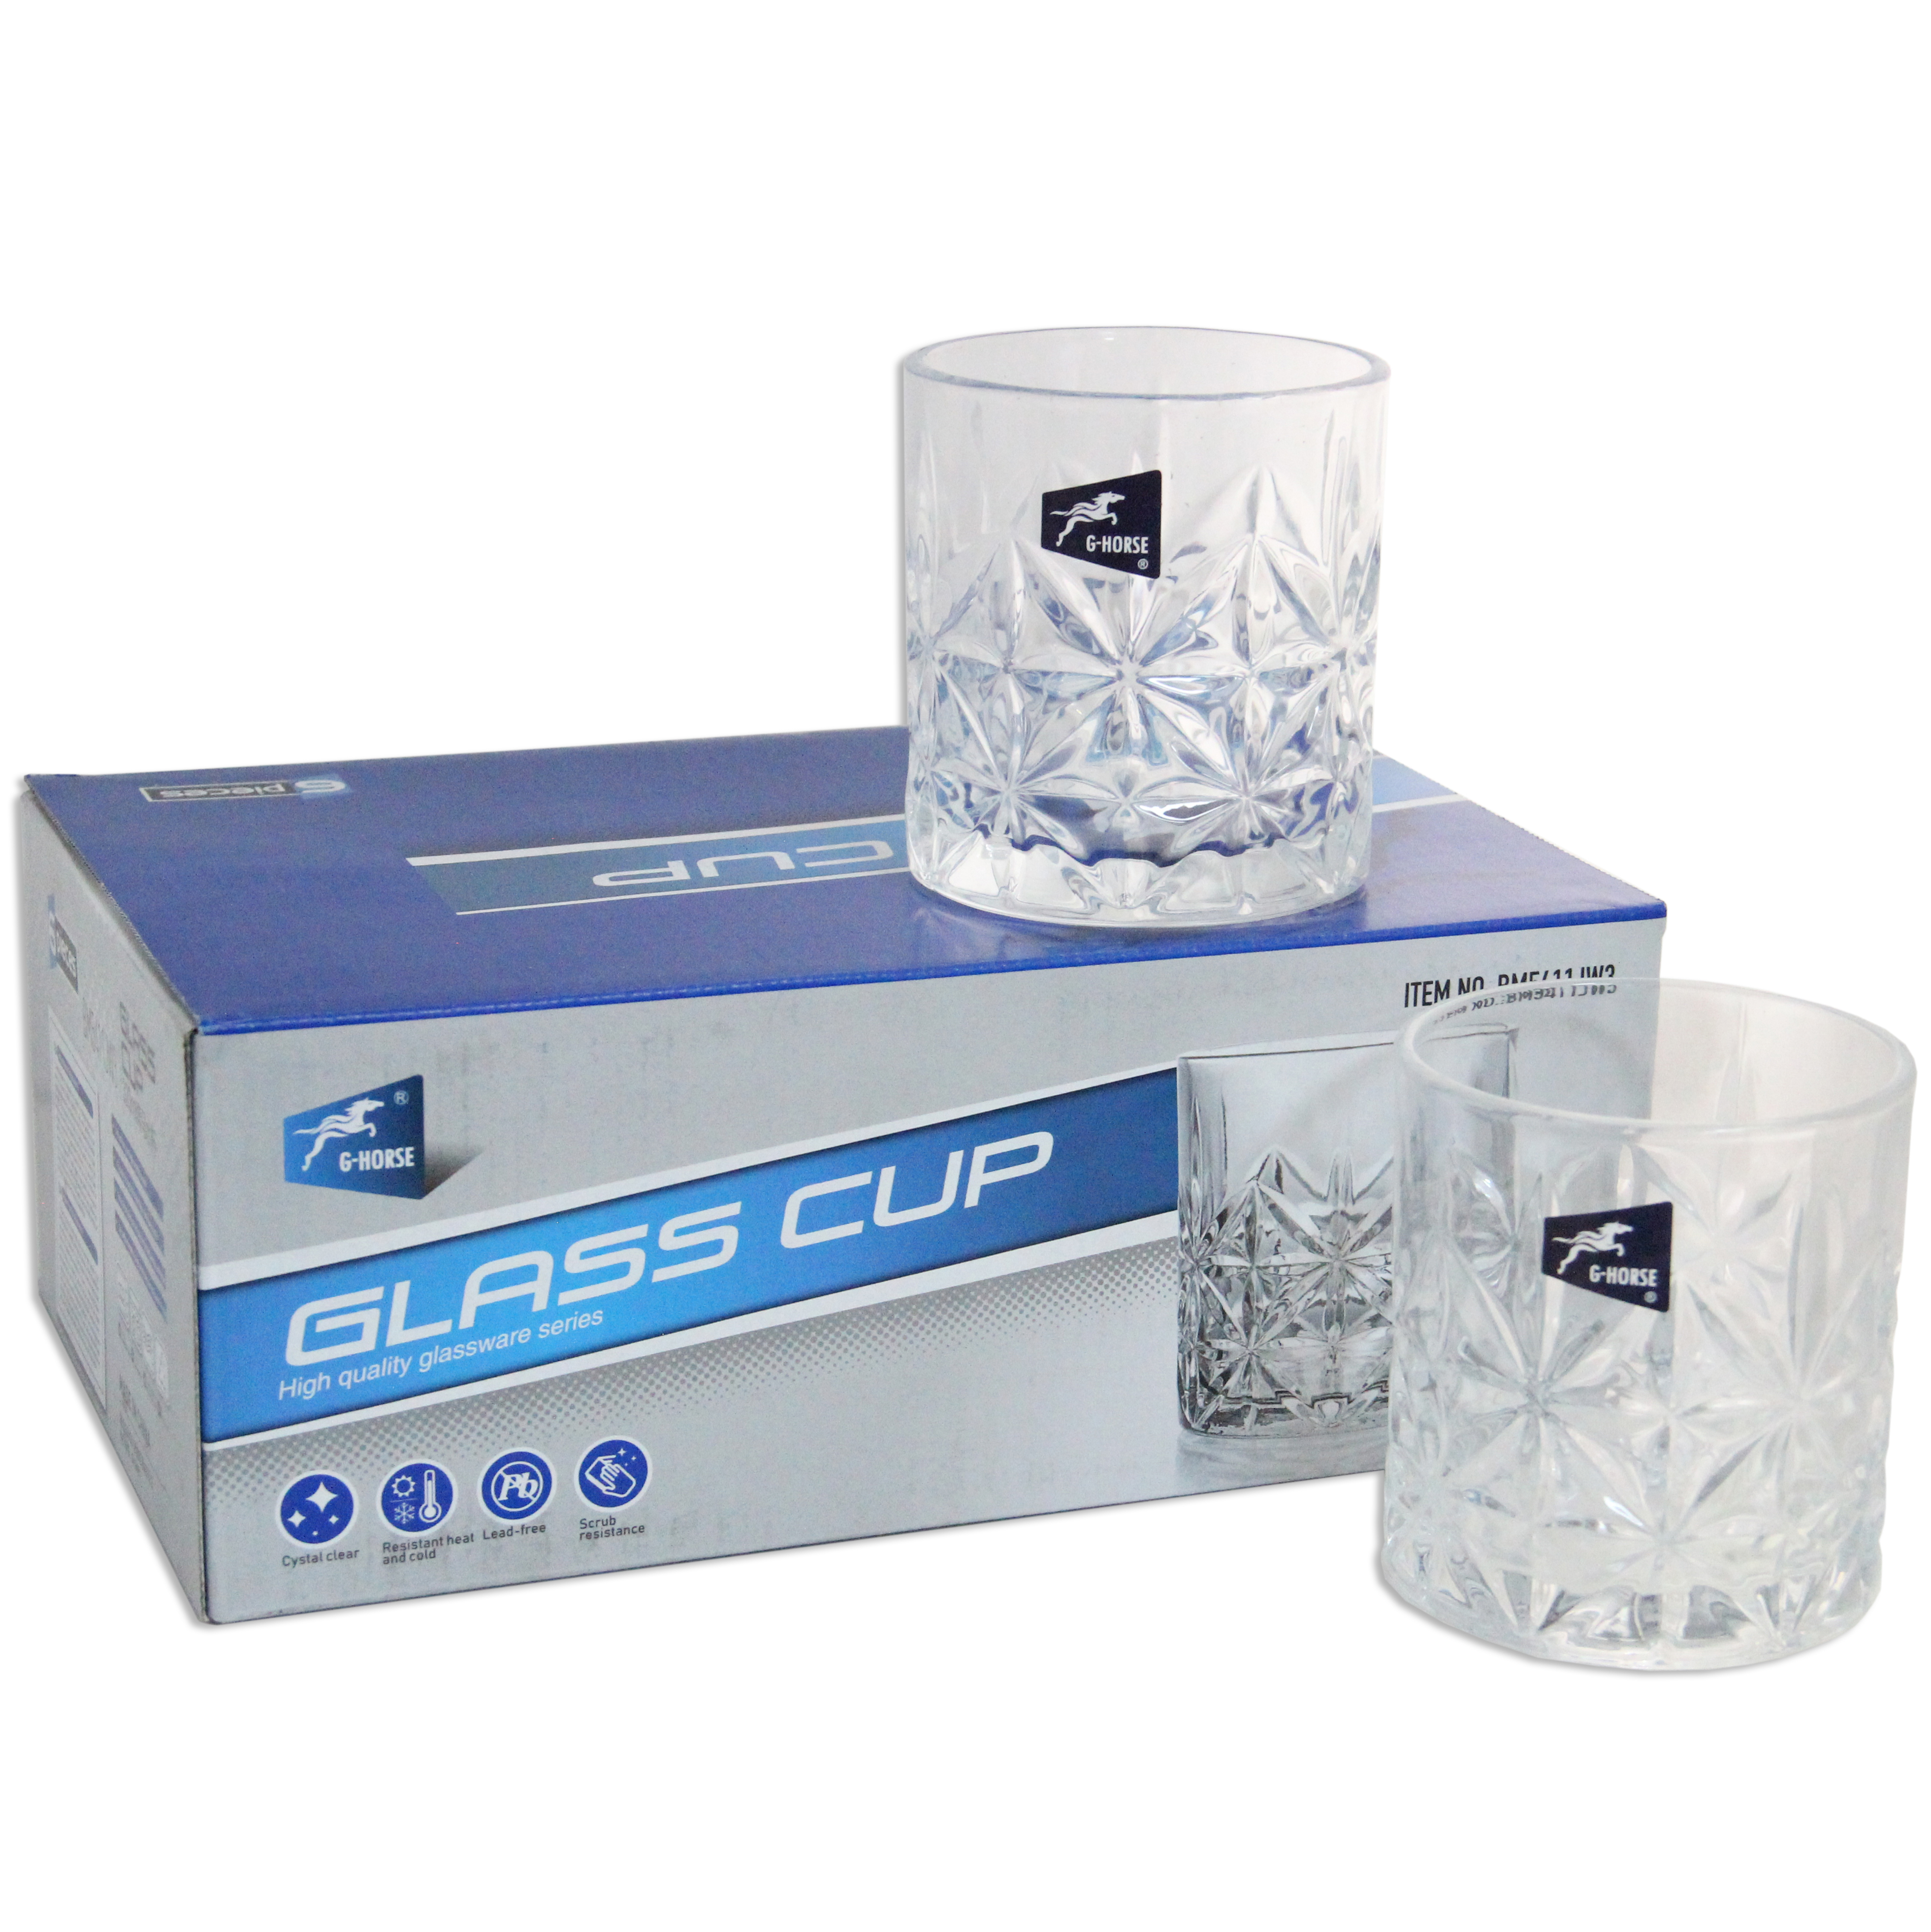 Набір склянок Crystal Carol в упаковці G Horse YBCG-235 320 мл 6 шт. (83000235_YBCG-235) - фото 2